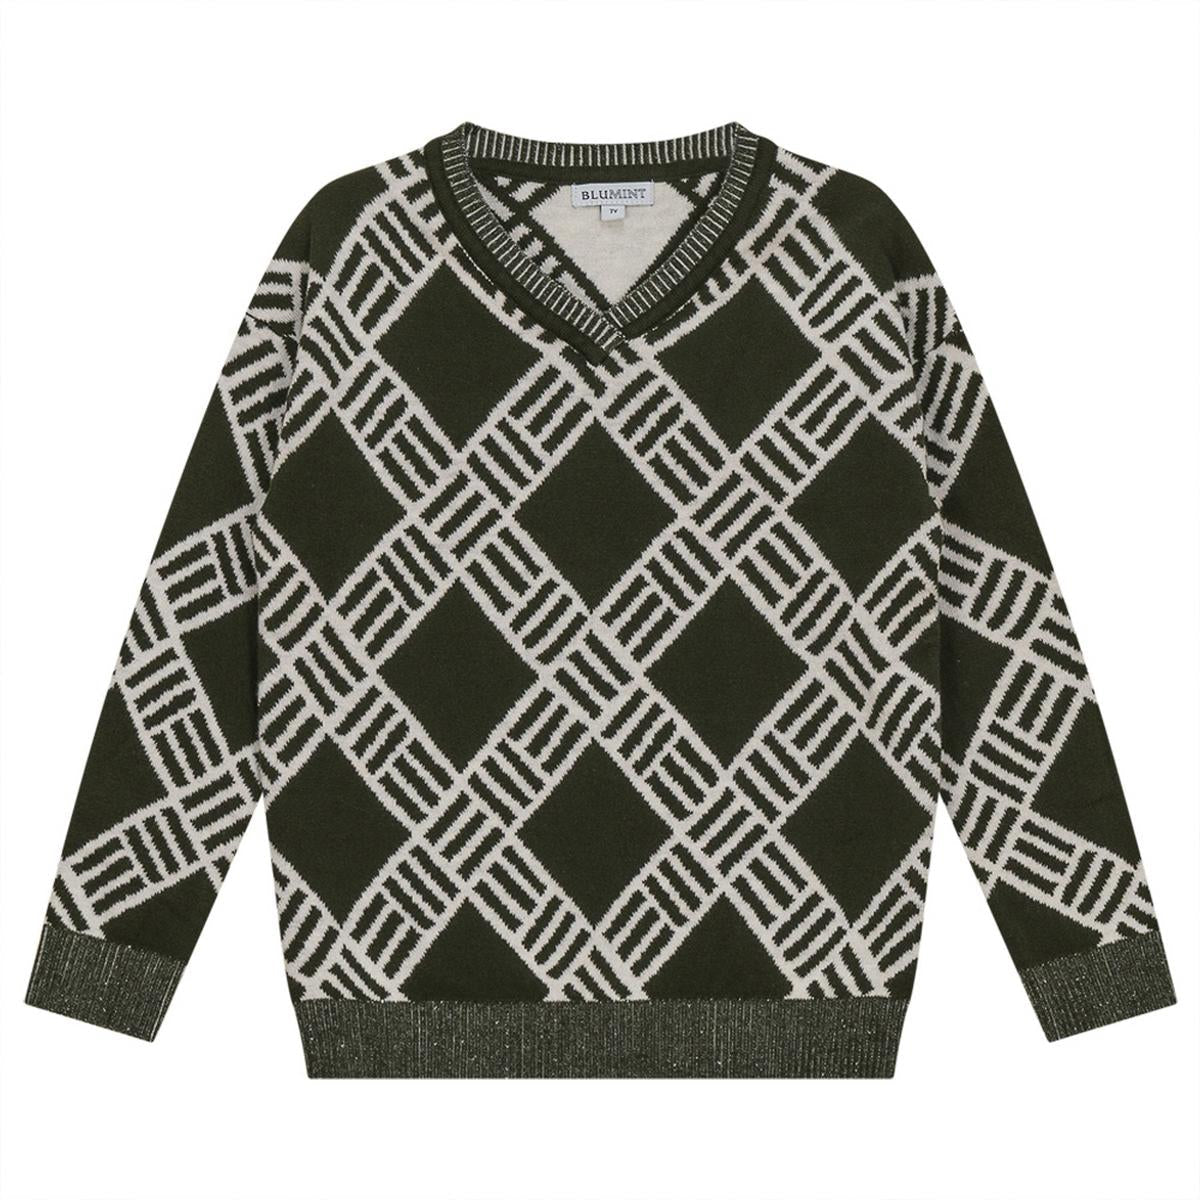 Blumint Olive Print Knit Sweater